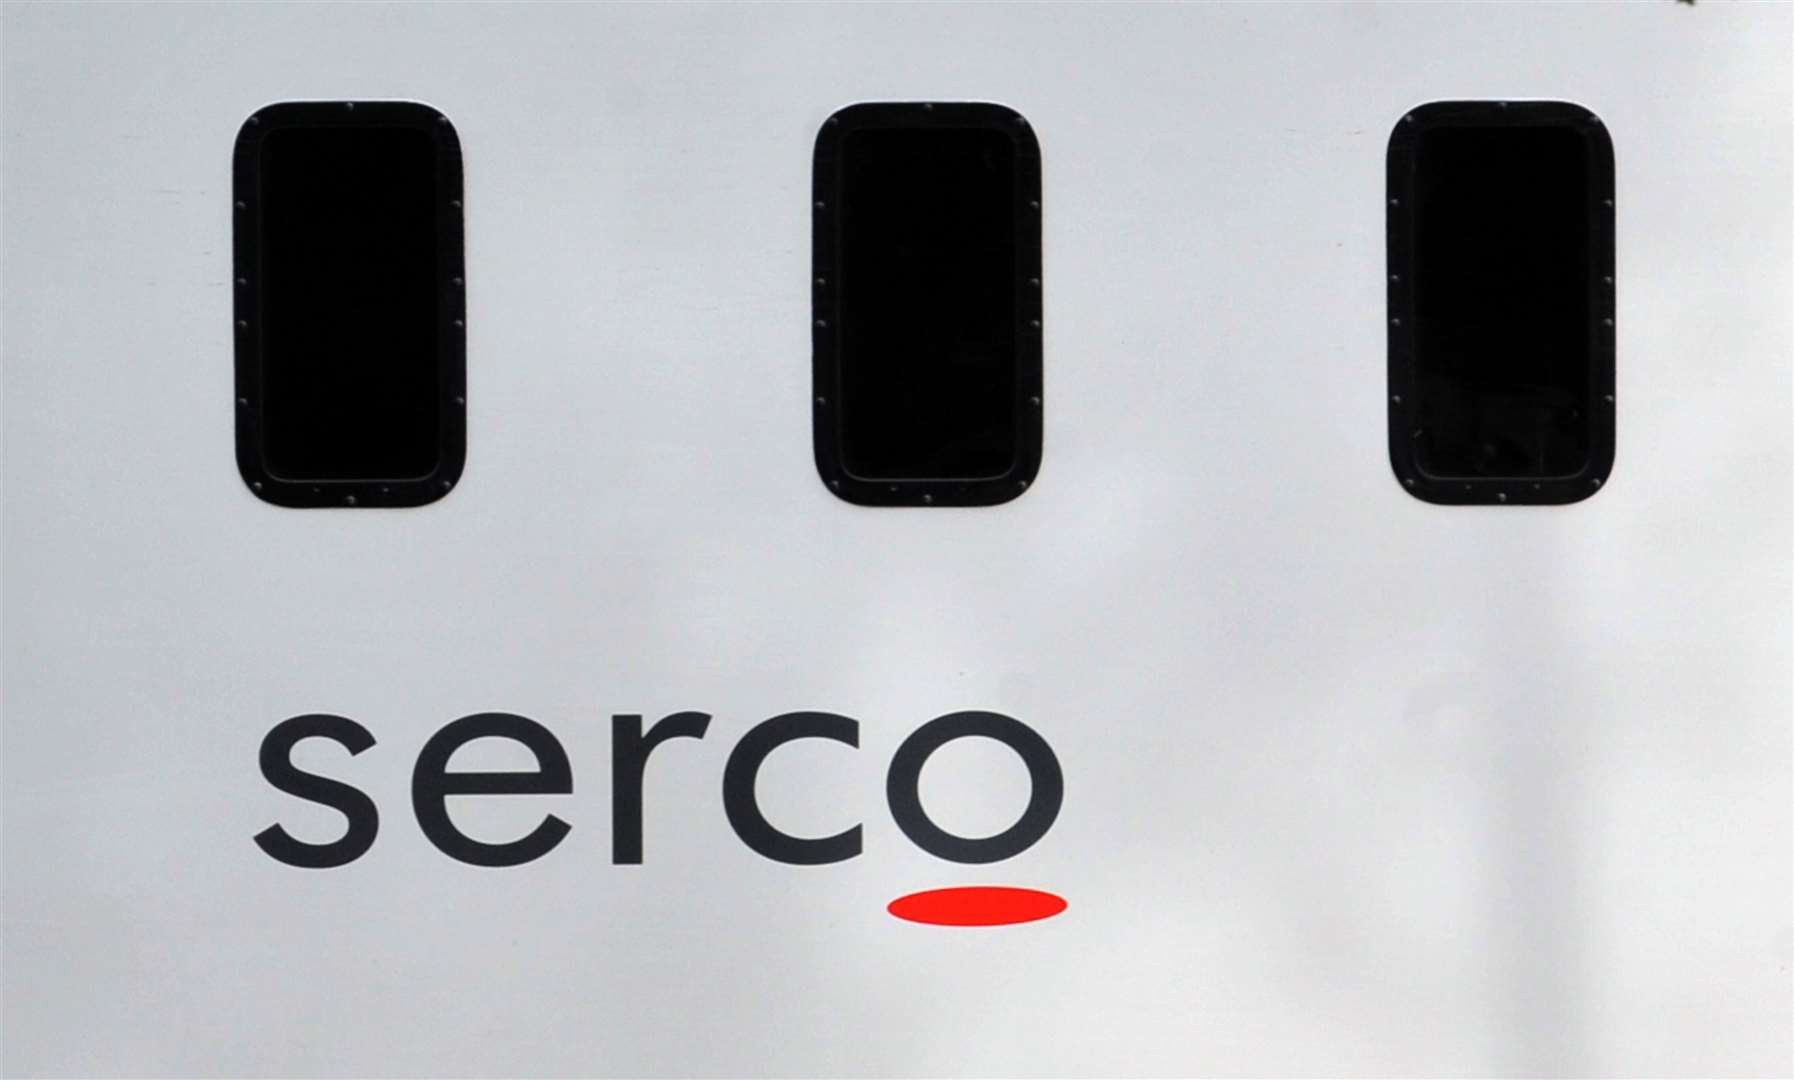 Serco said its revenues increased by 19% (Ian Nicholson/PA)